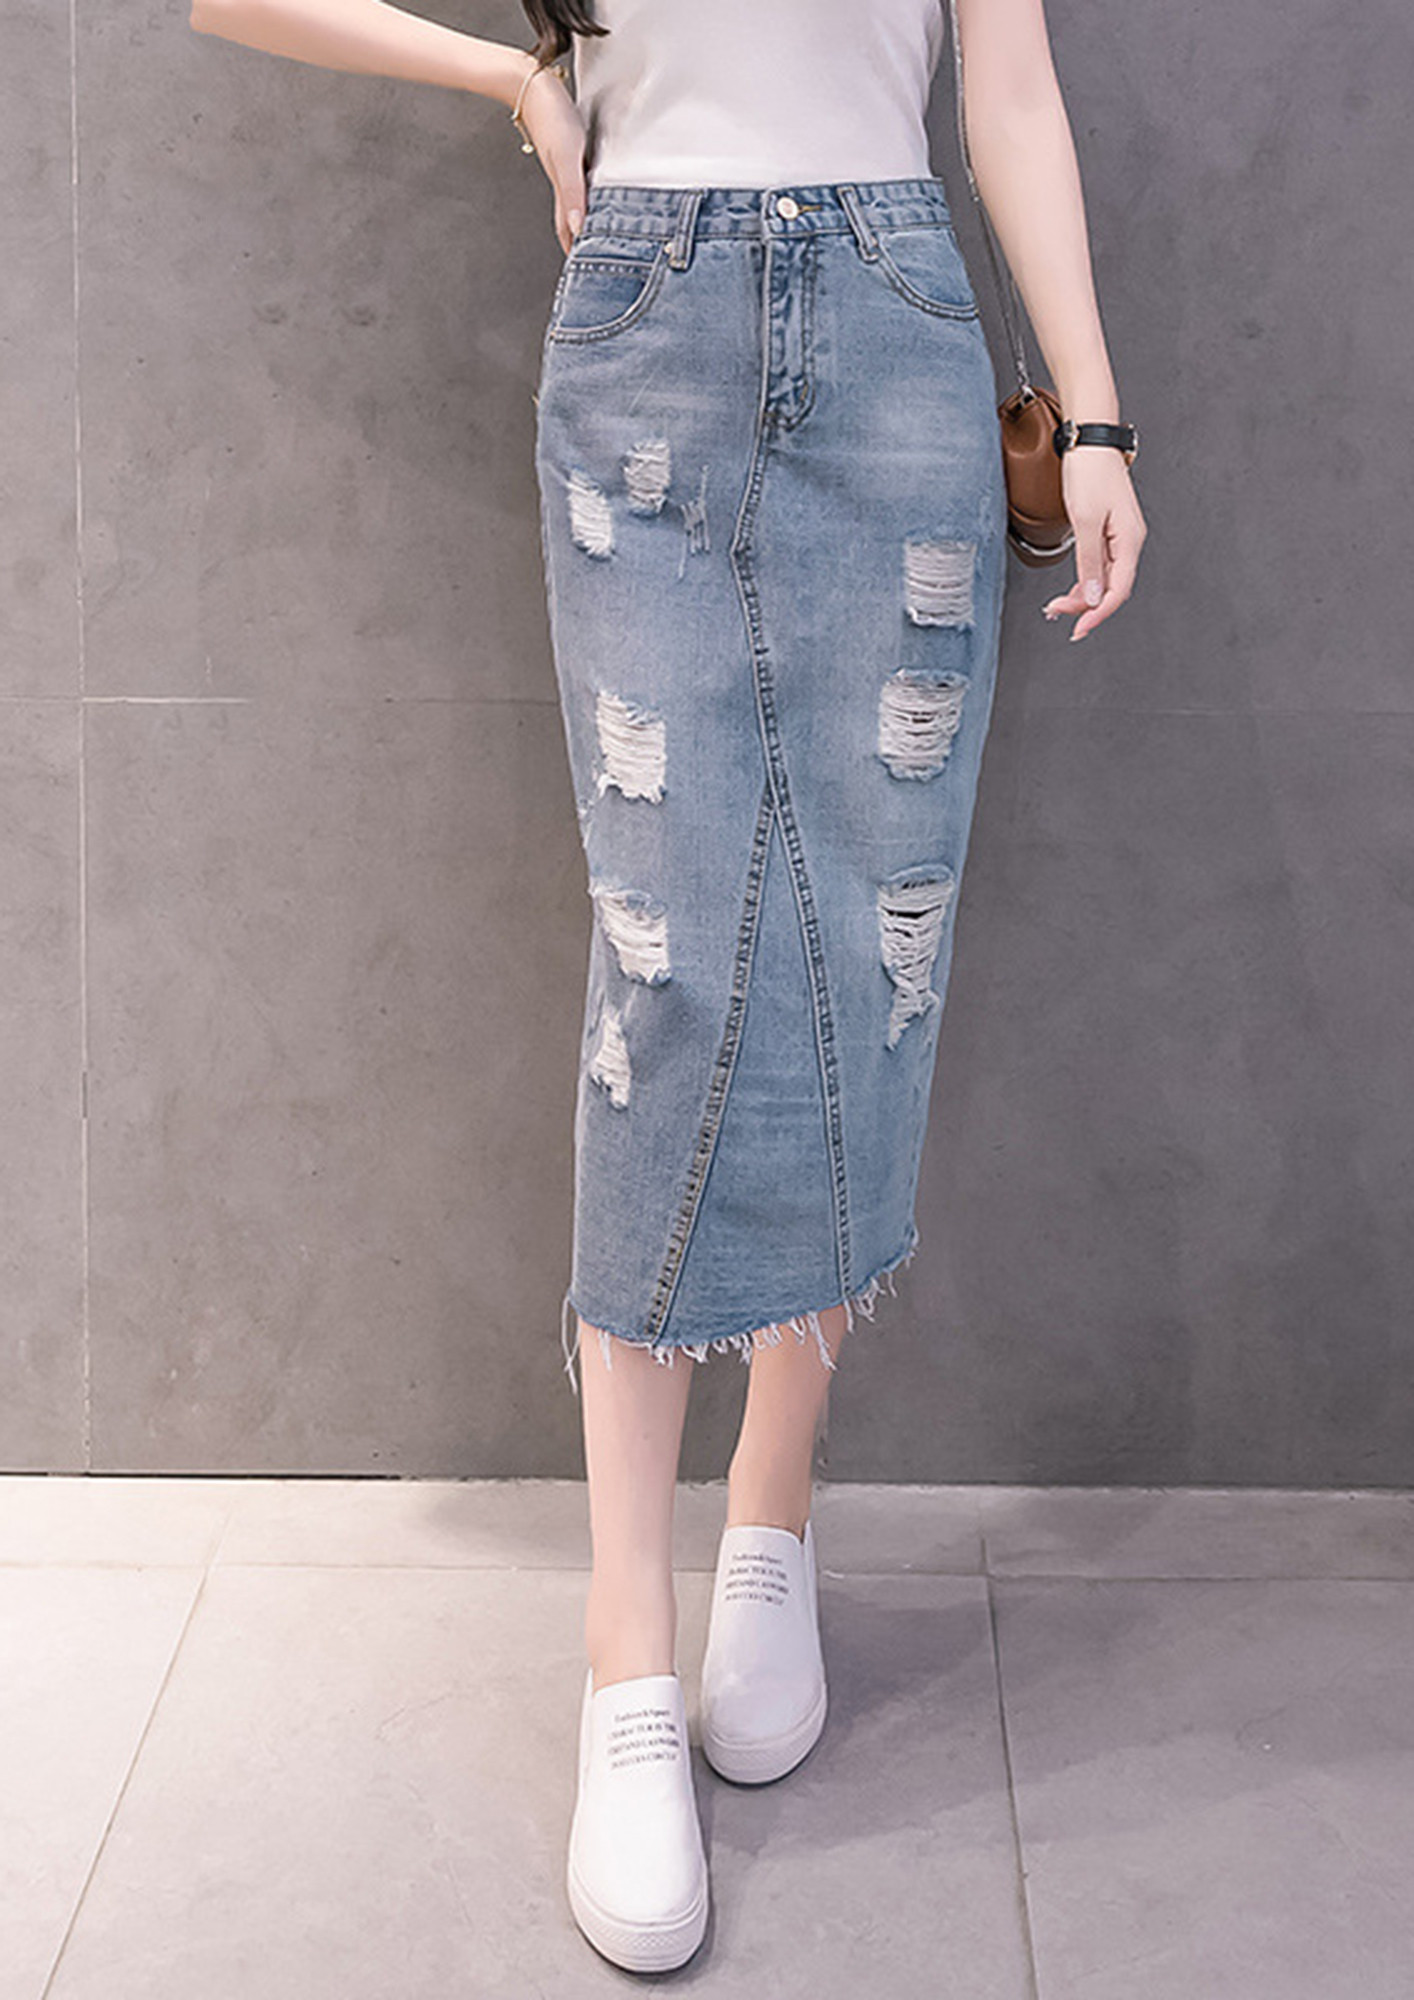 CZELRINE Jean Skirts for Women Knee Length,High Waist Split Bag Hip Jean  Skirt, Midi Length Denim Skirts(4, xs) Blue… at Amazon Women's Jeans store